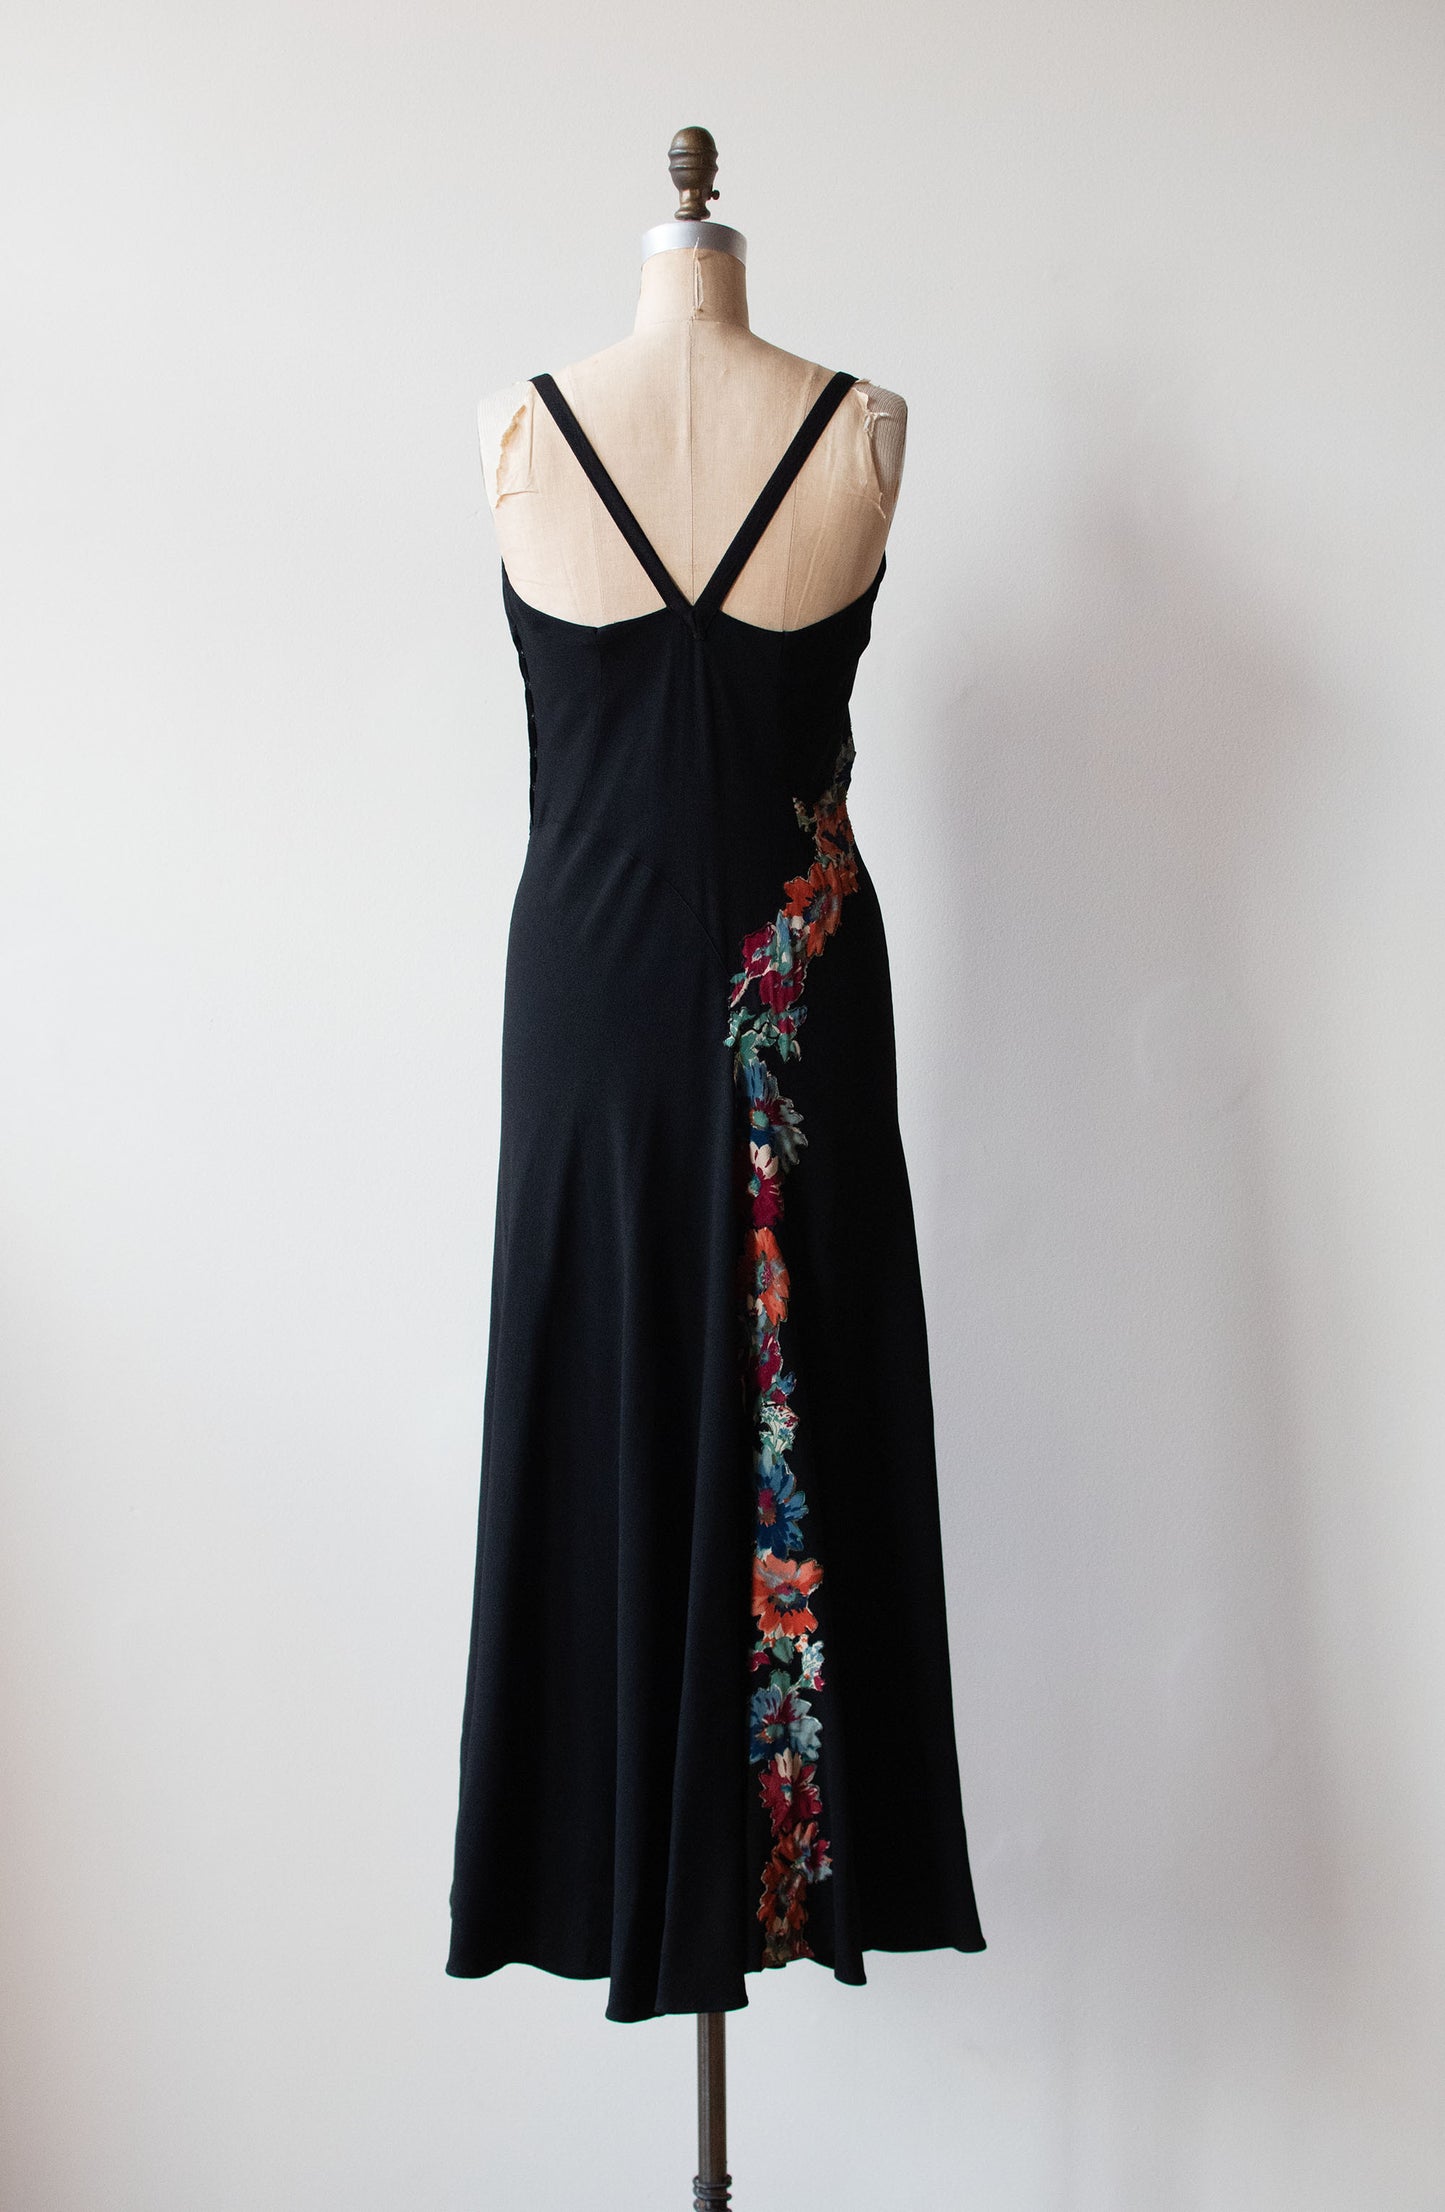 1930s Black Applique Dress